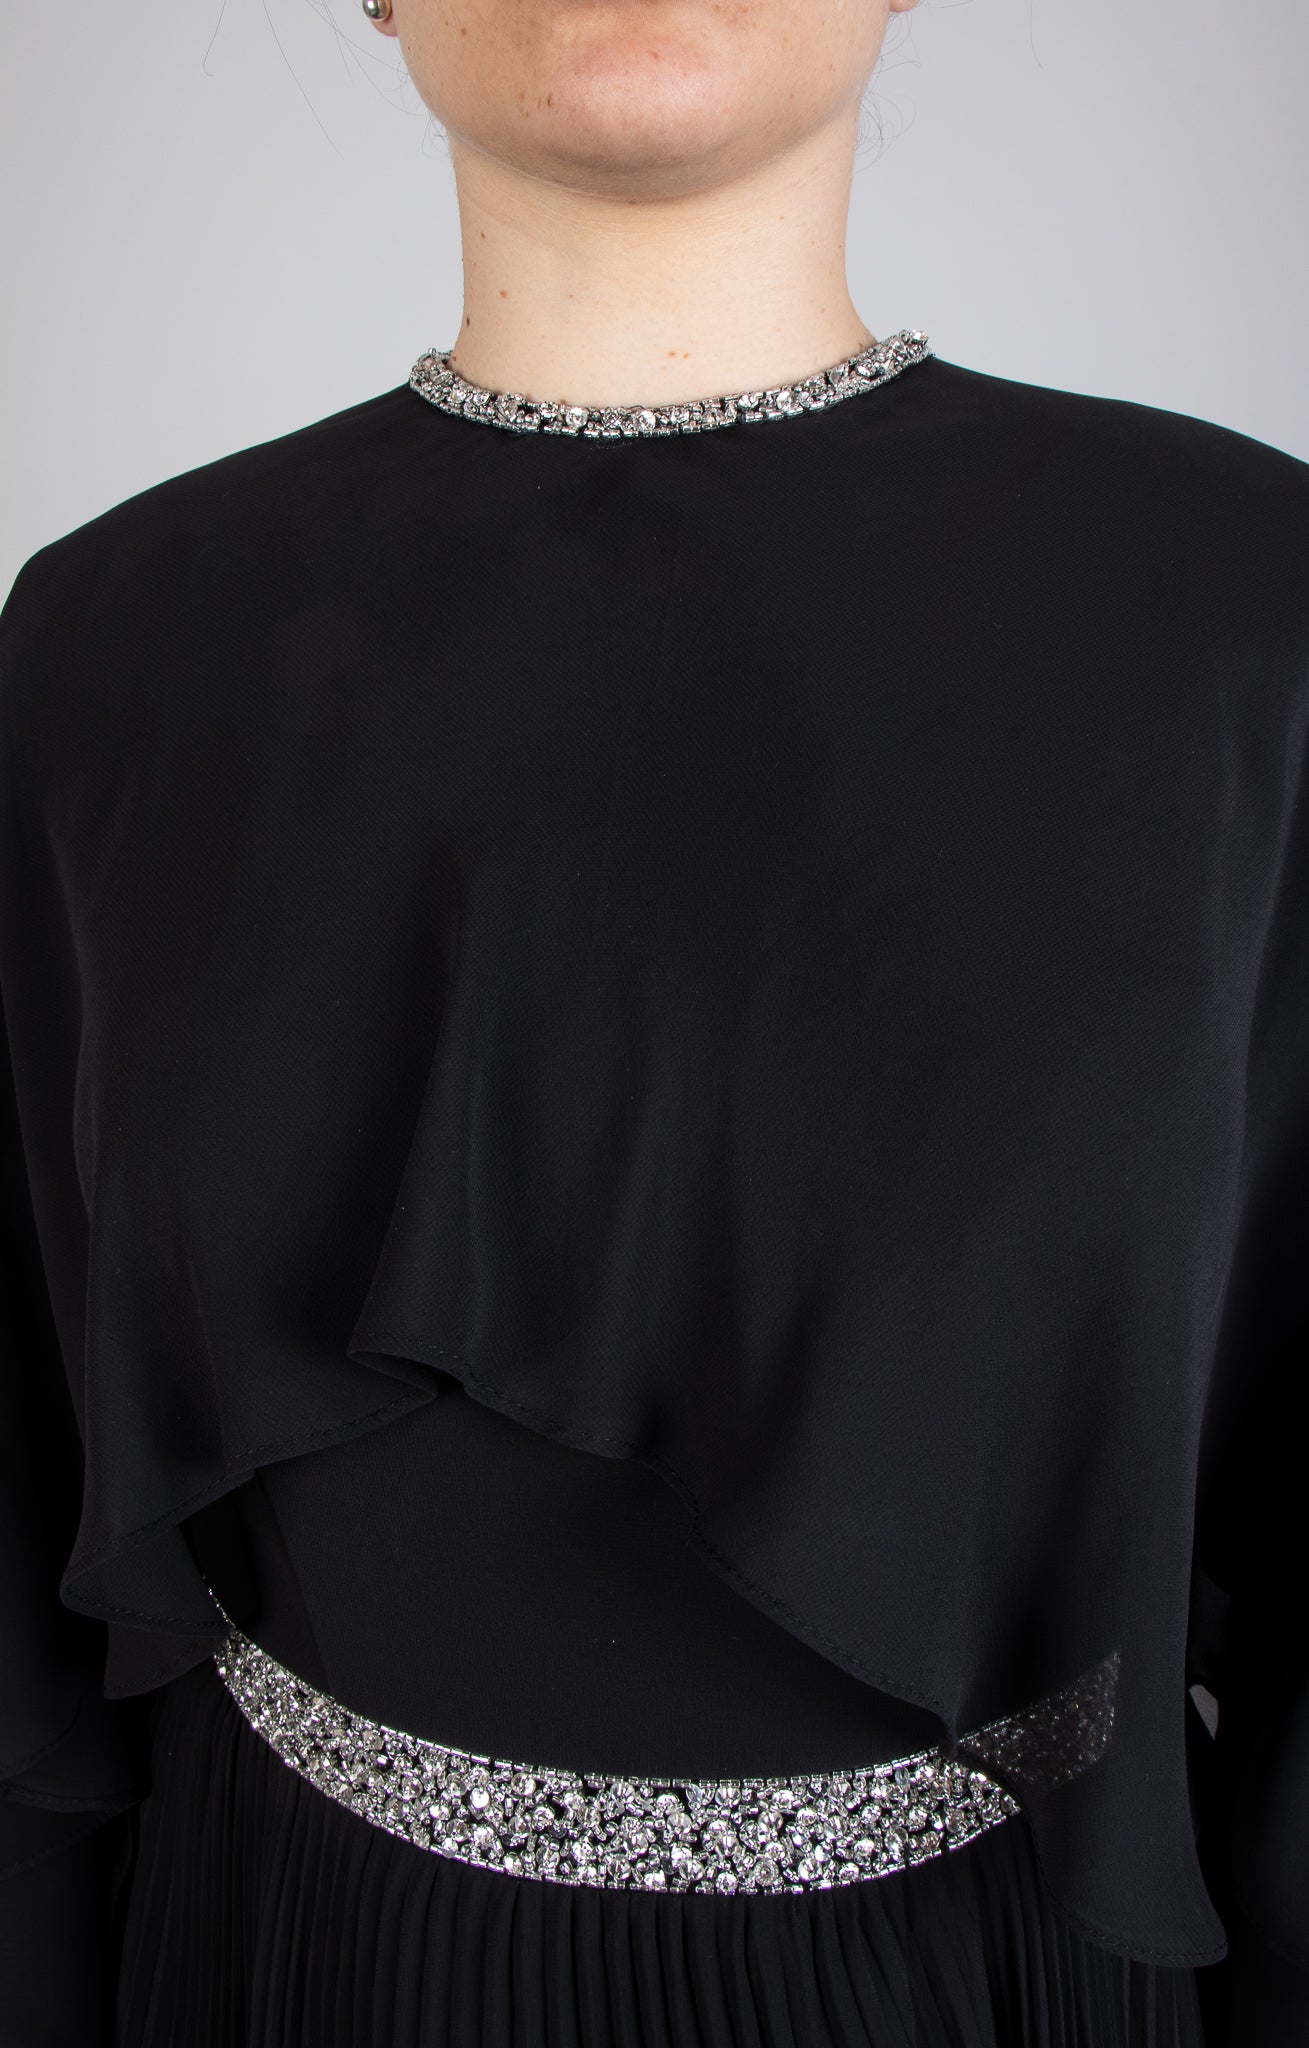 Vestido chifon plisado efecto capas negro